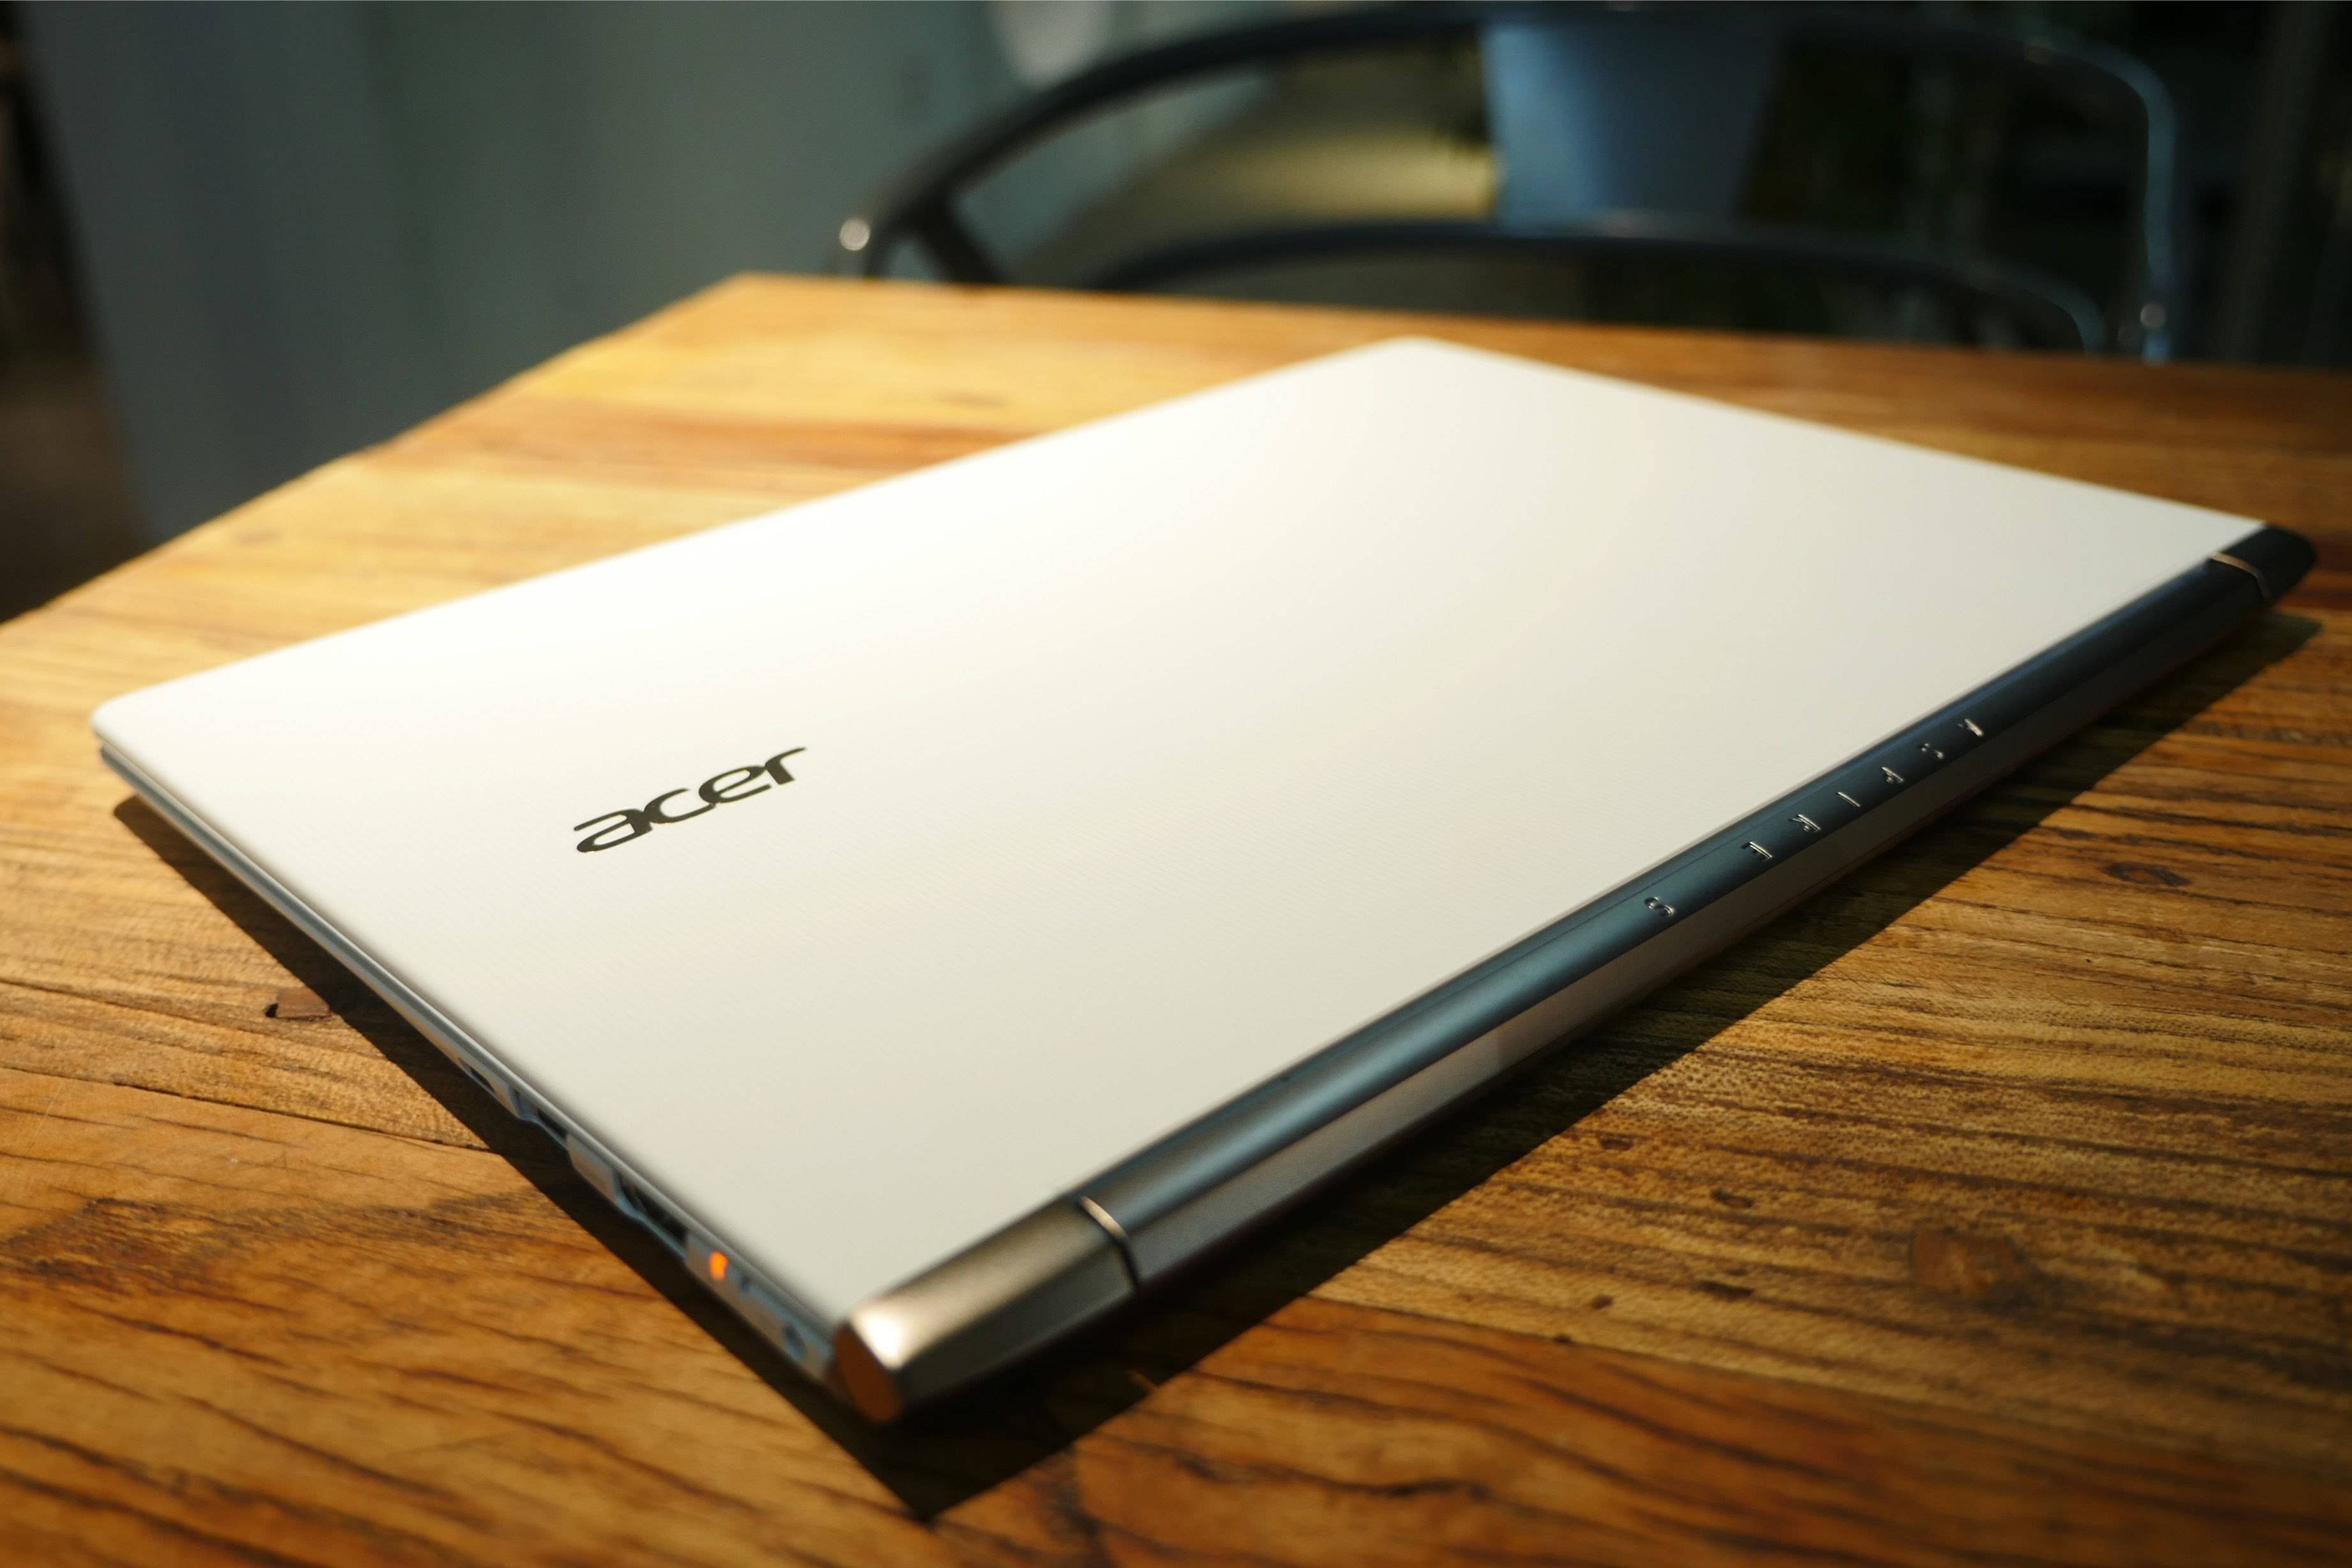 Acer S5 体验:最不像 MacBook 的超极本 - 微信